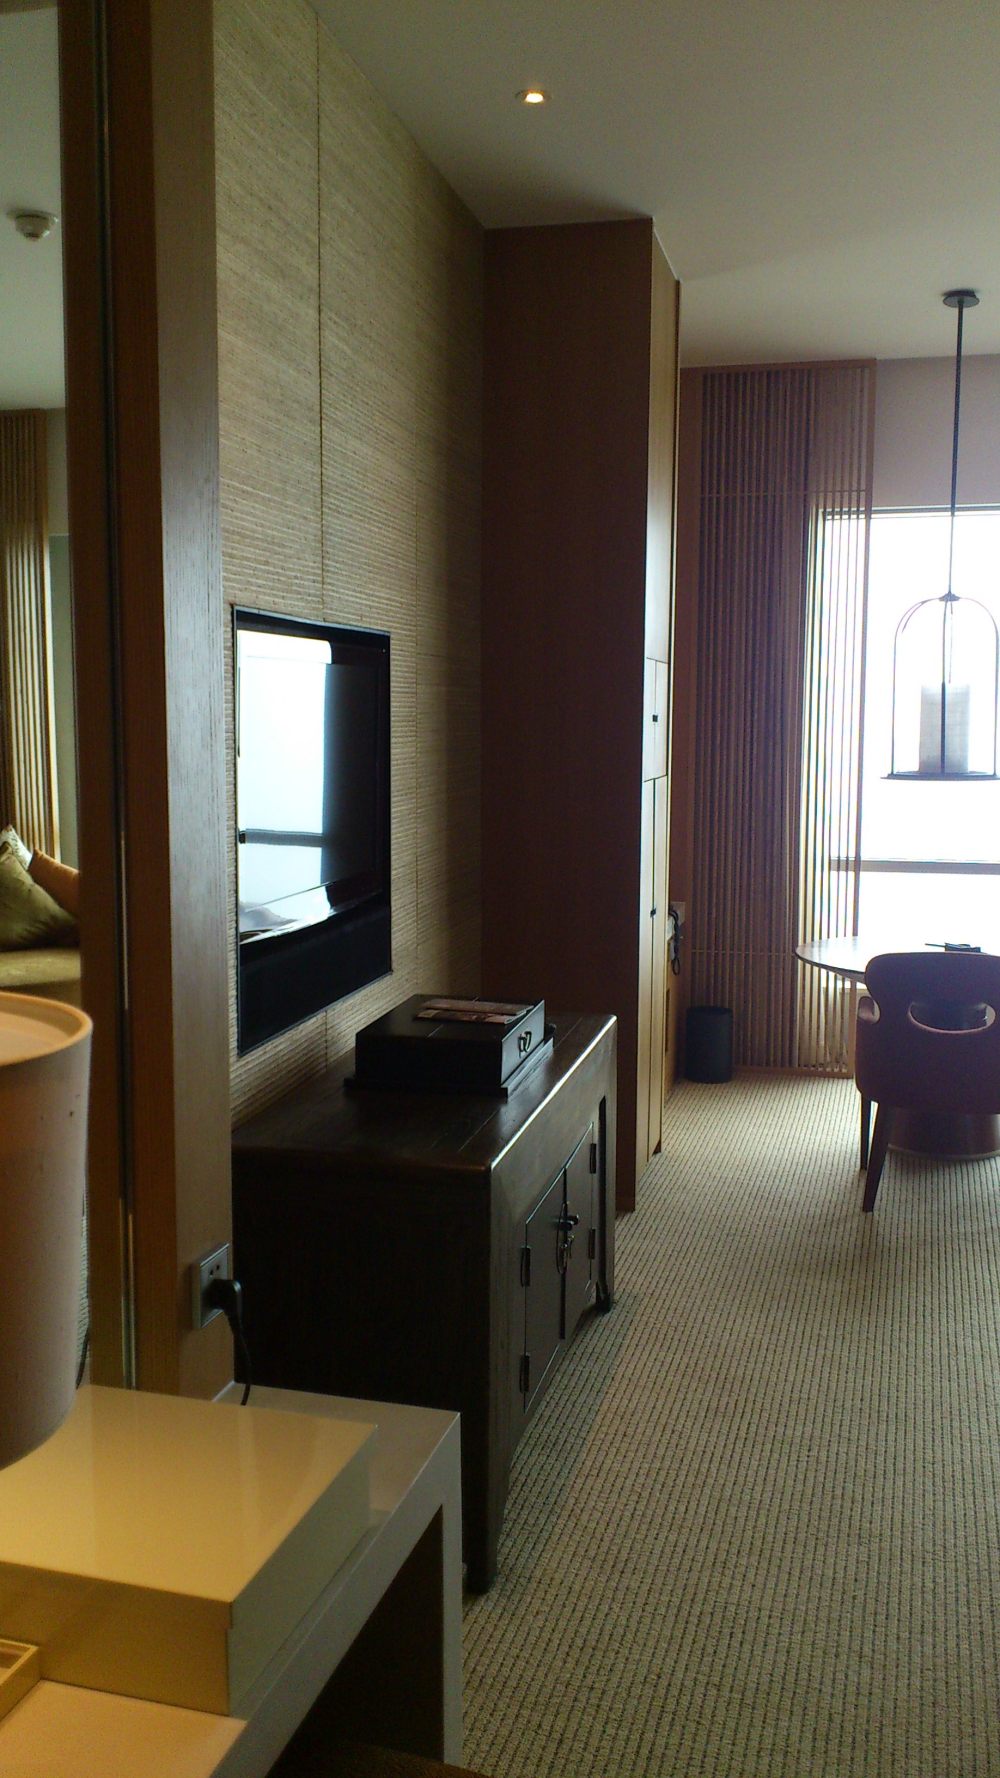 苏州晋合洲际Intercontinental酒店--2012.06.24第八页更新客房_DSC_1297.JPG